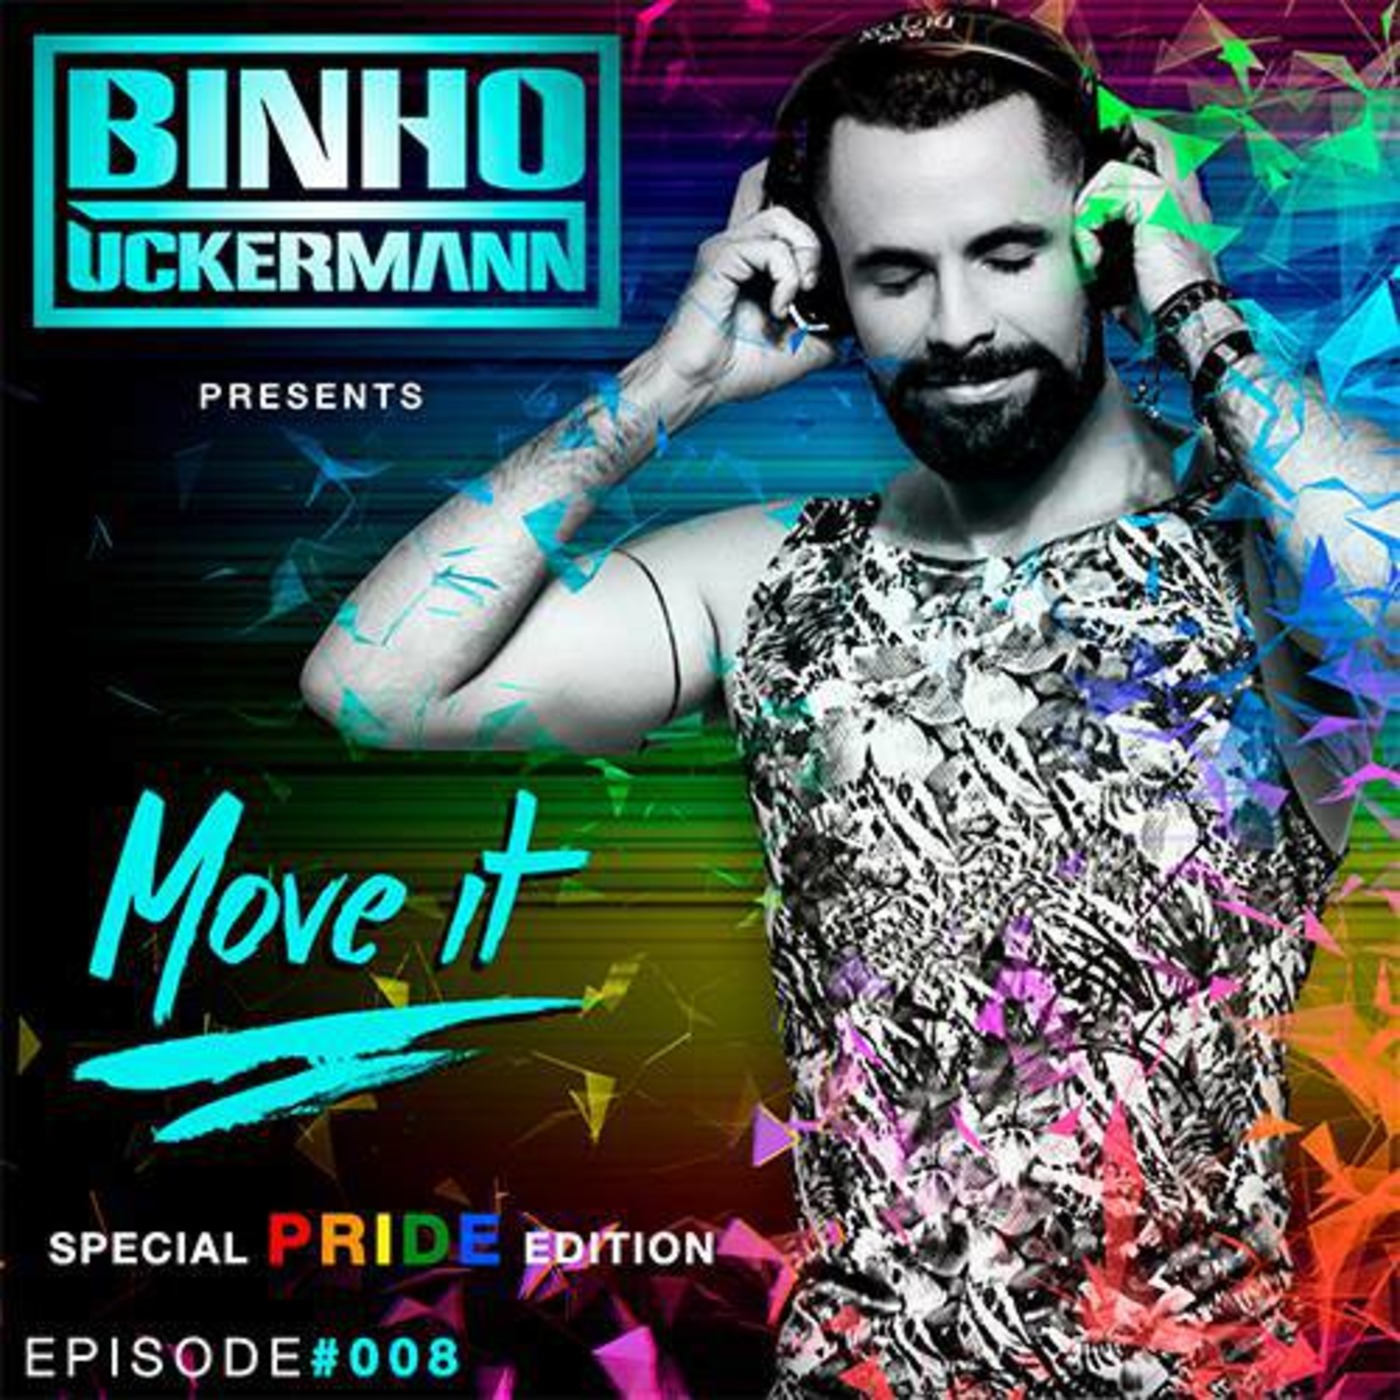 DJ Binho Uckermann